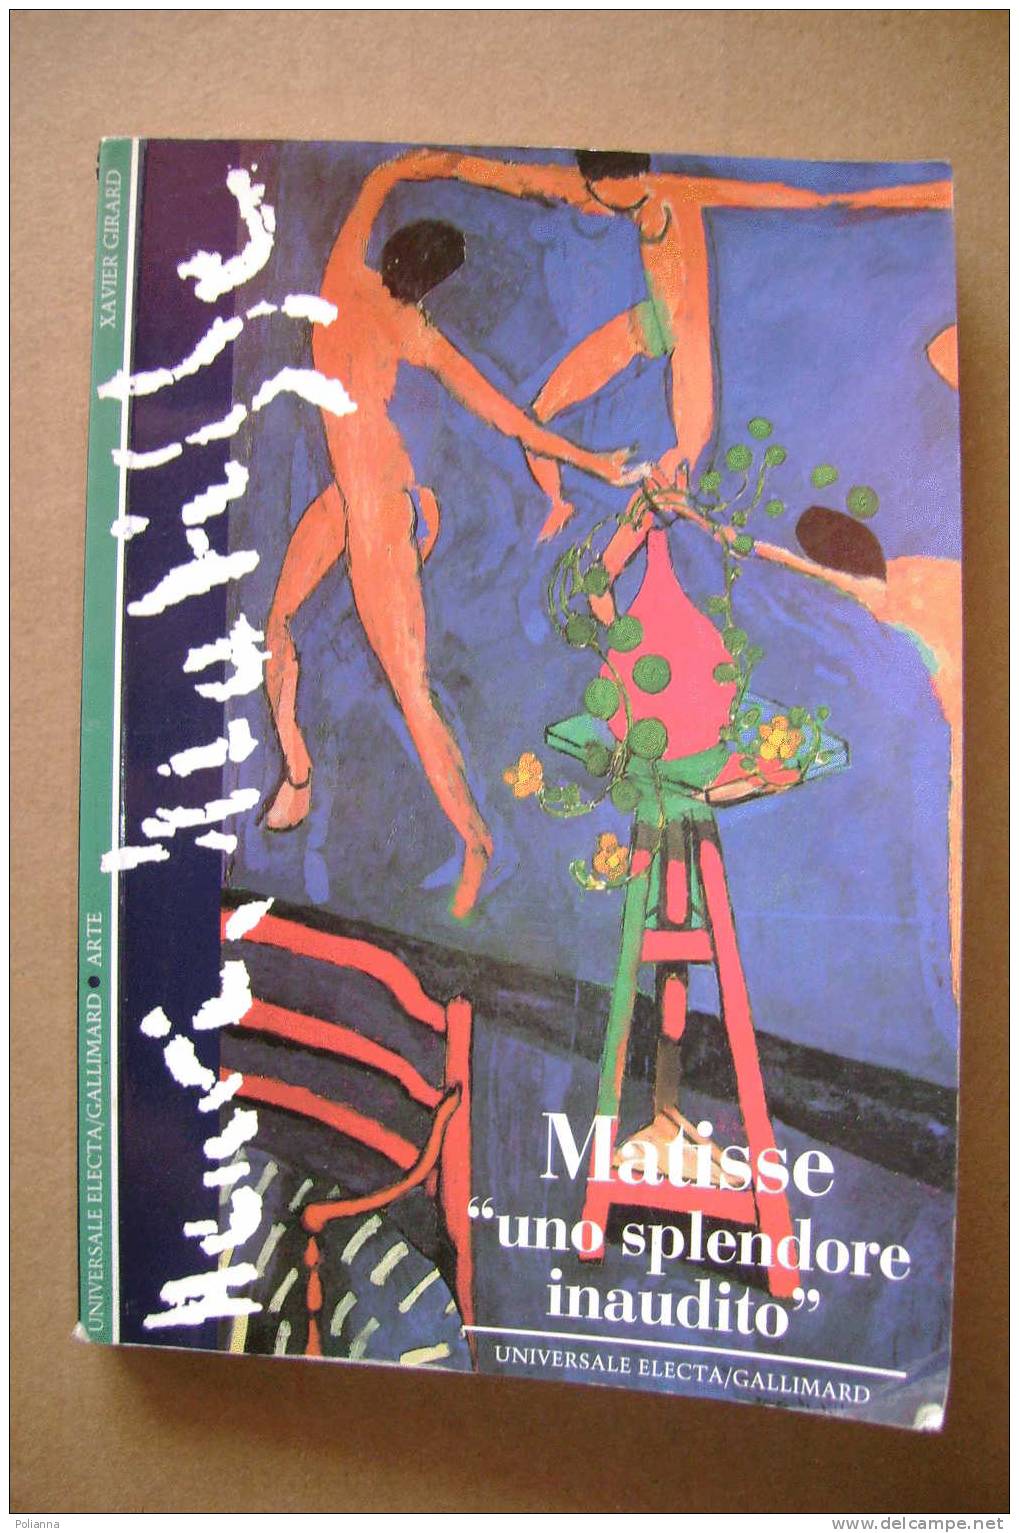 PAH/16  Xavier MATISSE Simbolismo/fauve Electa Gallimard 1996 - Arts, Antiquity